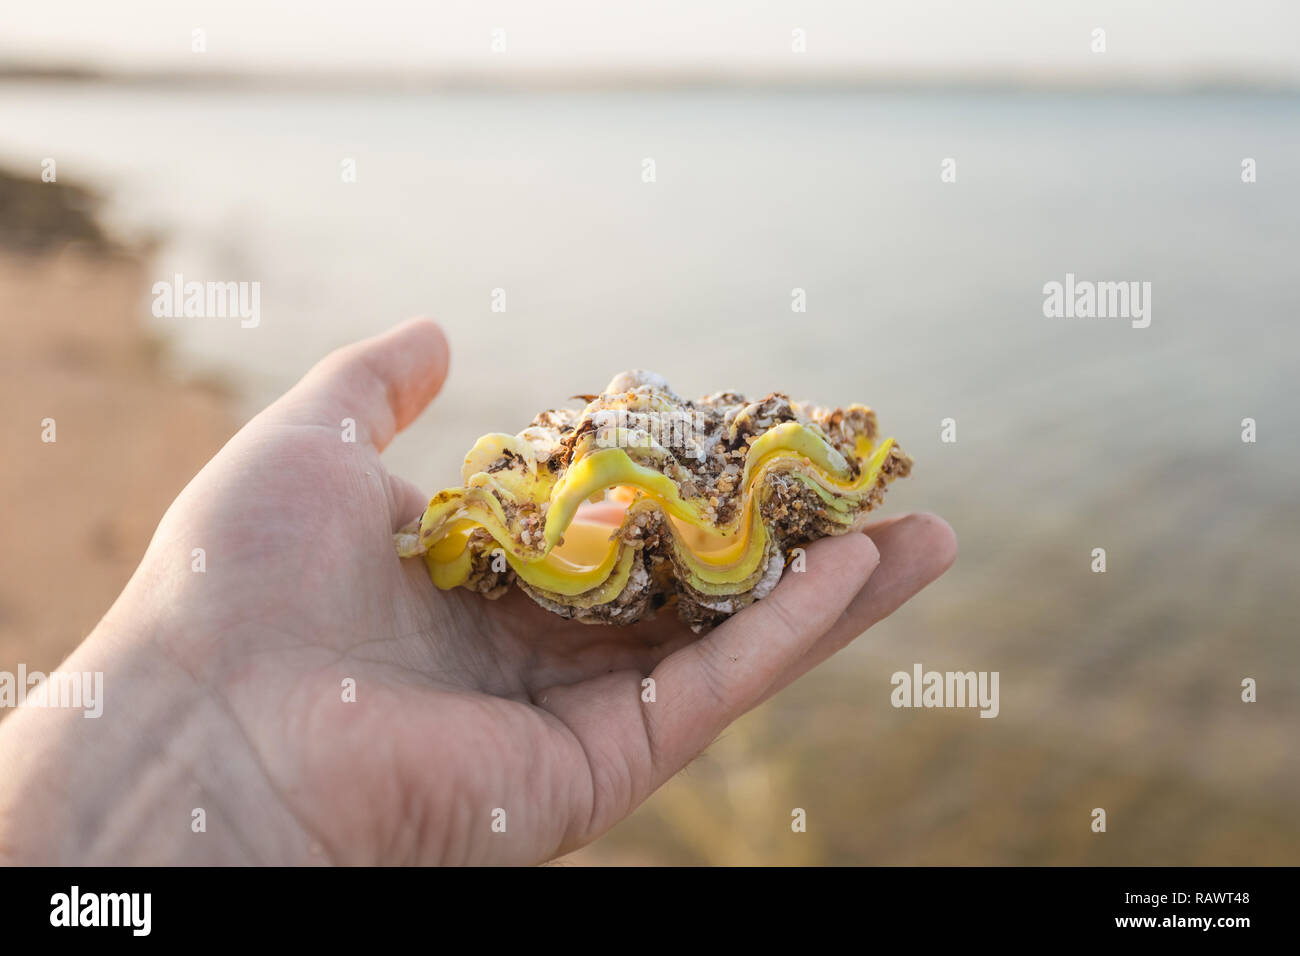 Mann glücklich große schöne Muschel am sandigen Morgen tropischen Strand zu finden. Horizontale Farbbild. Stockfoto